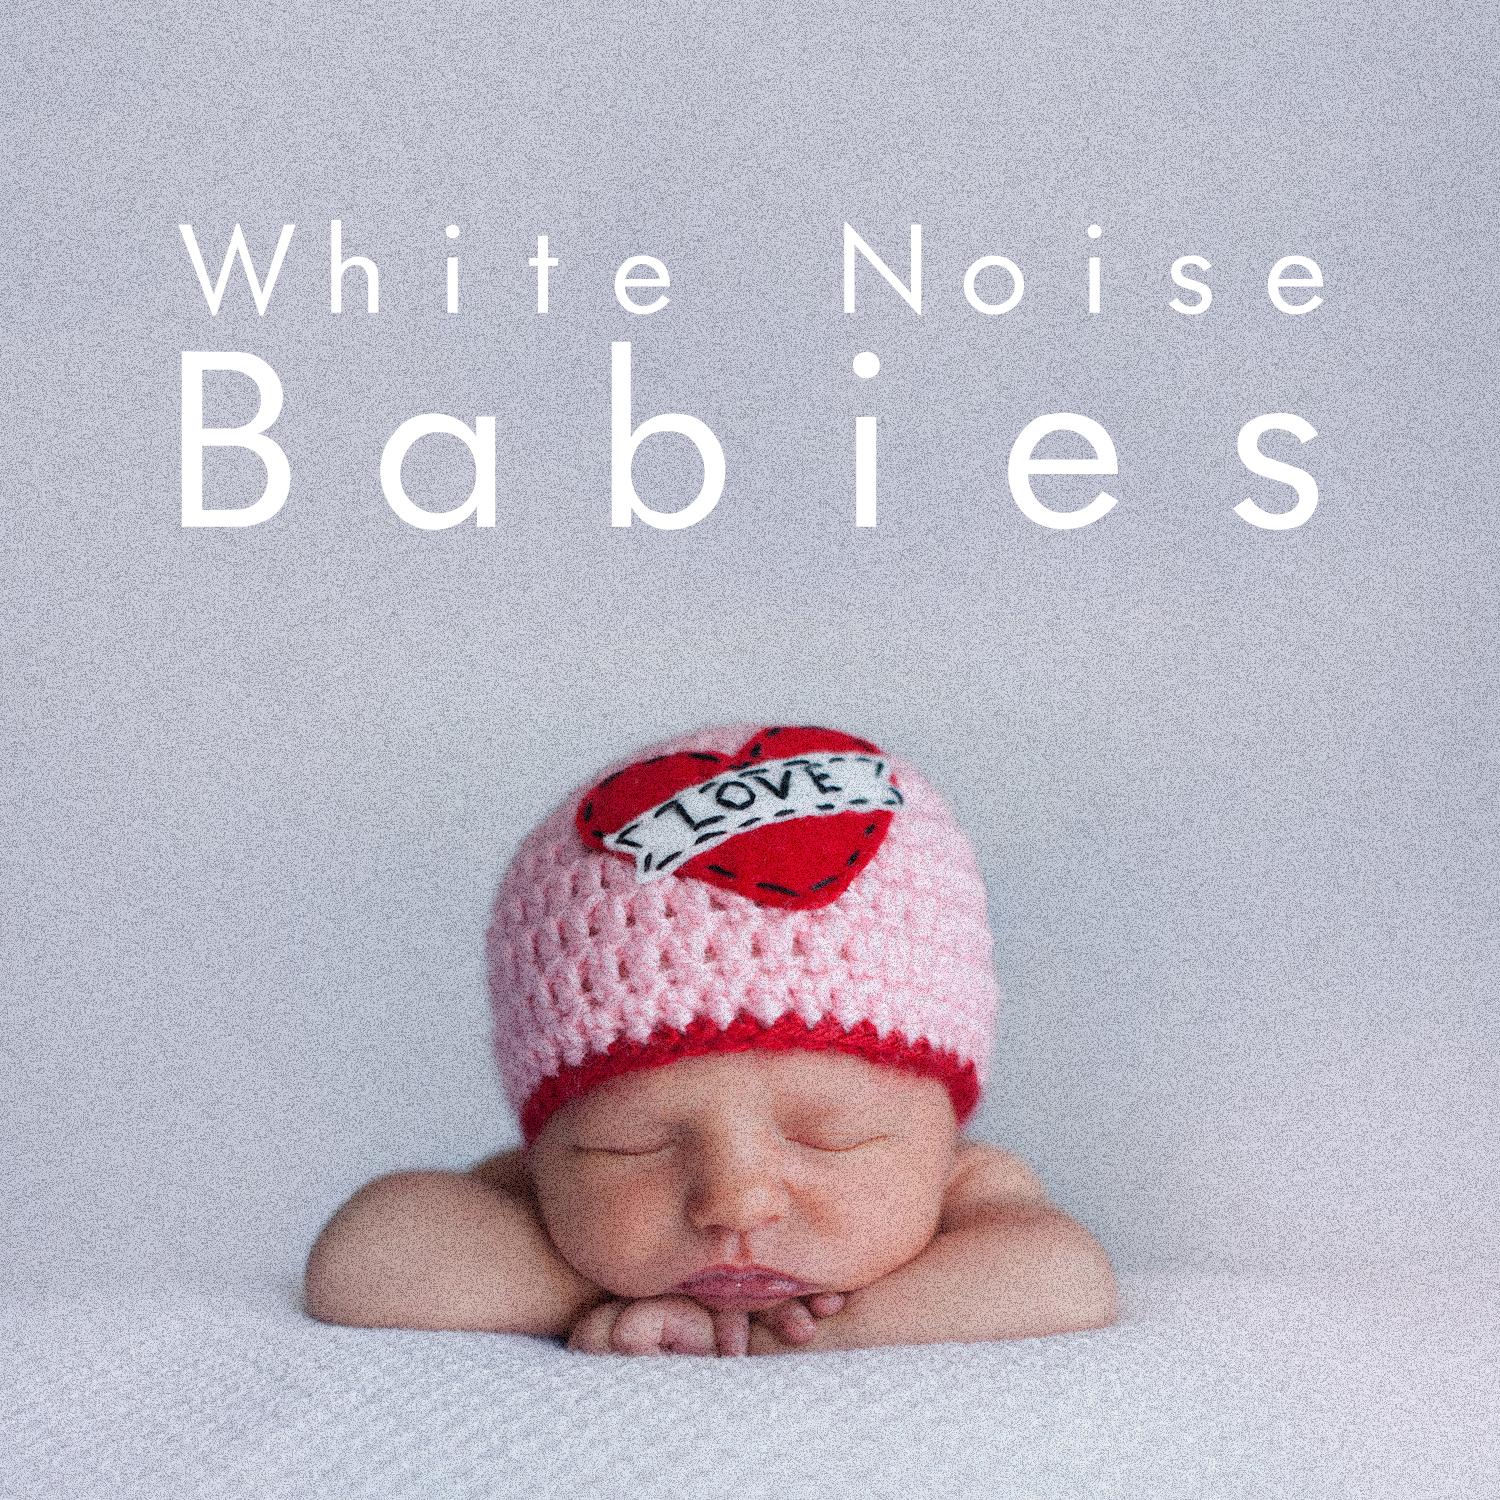 White Noise: Binaural Beating